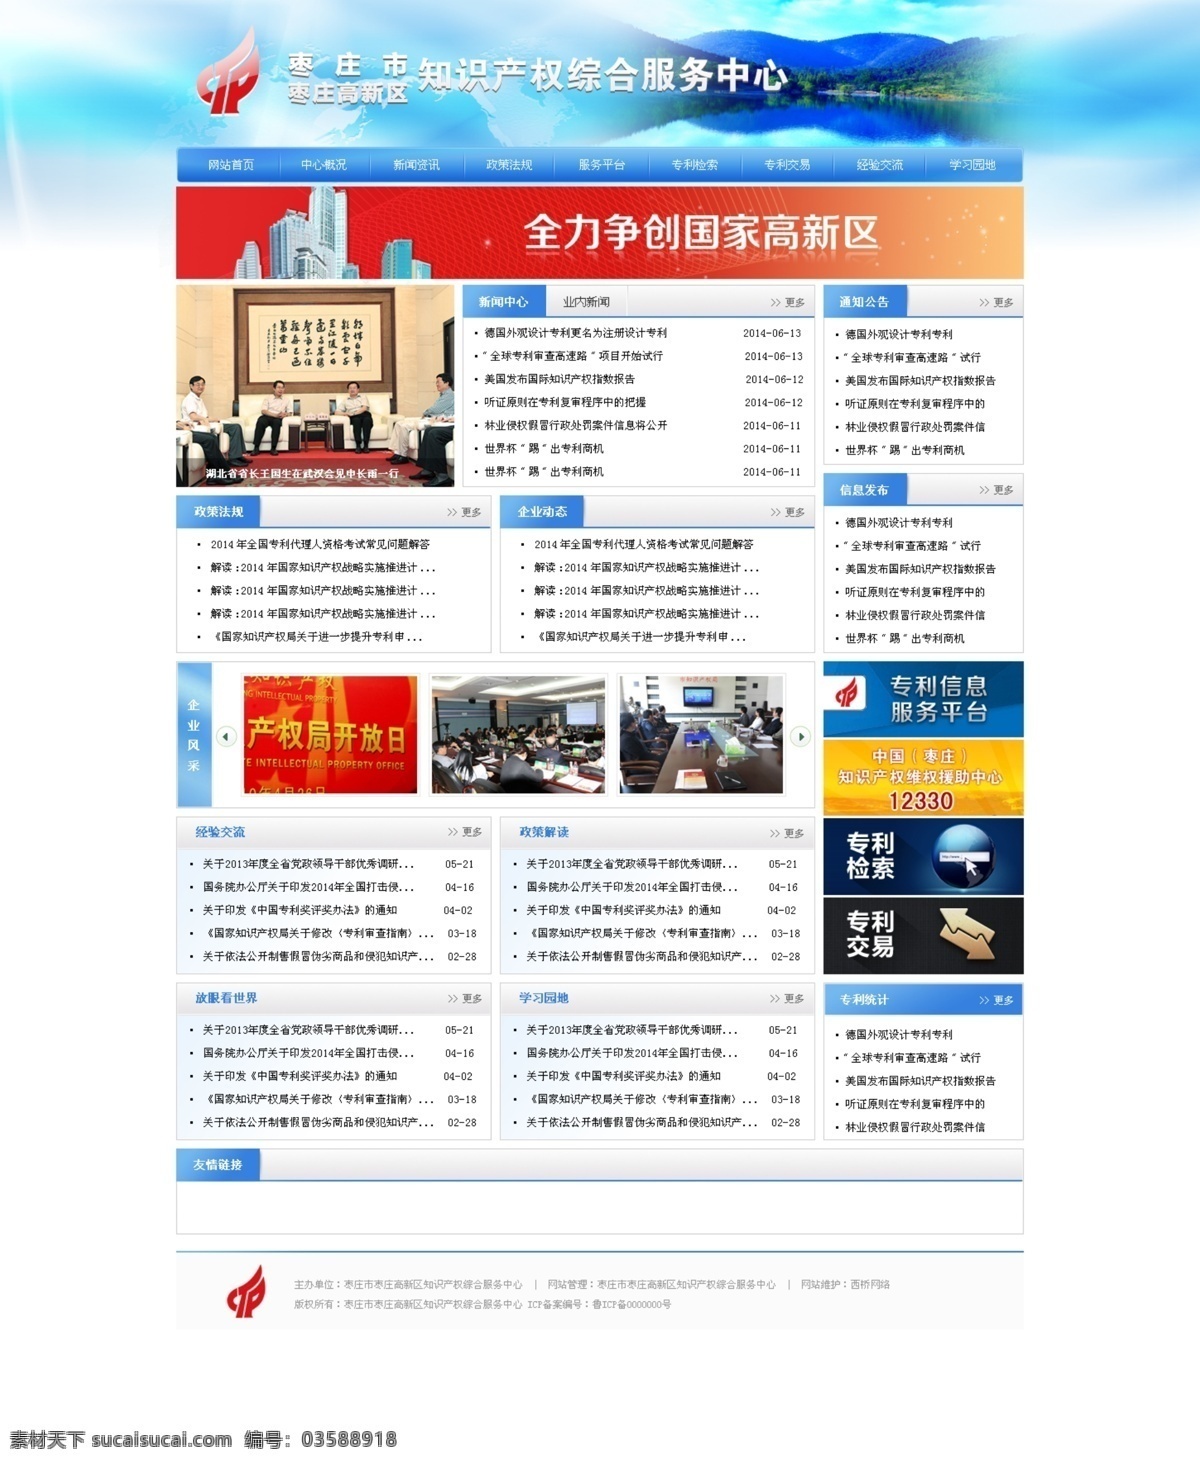 知识产权 综合 服务网站 网页 企业网站 界面 首页 展示 分层 山清水秀 天蓝色 web 界面设计 中文模板 白色